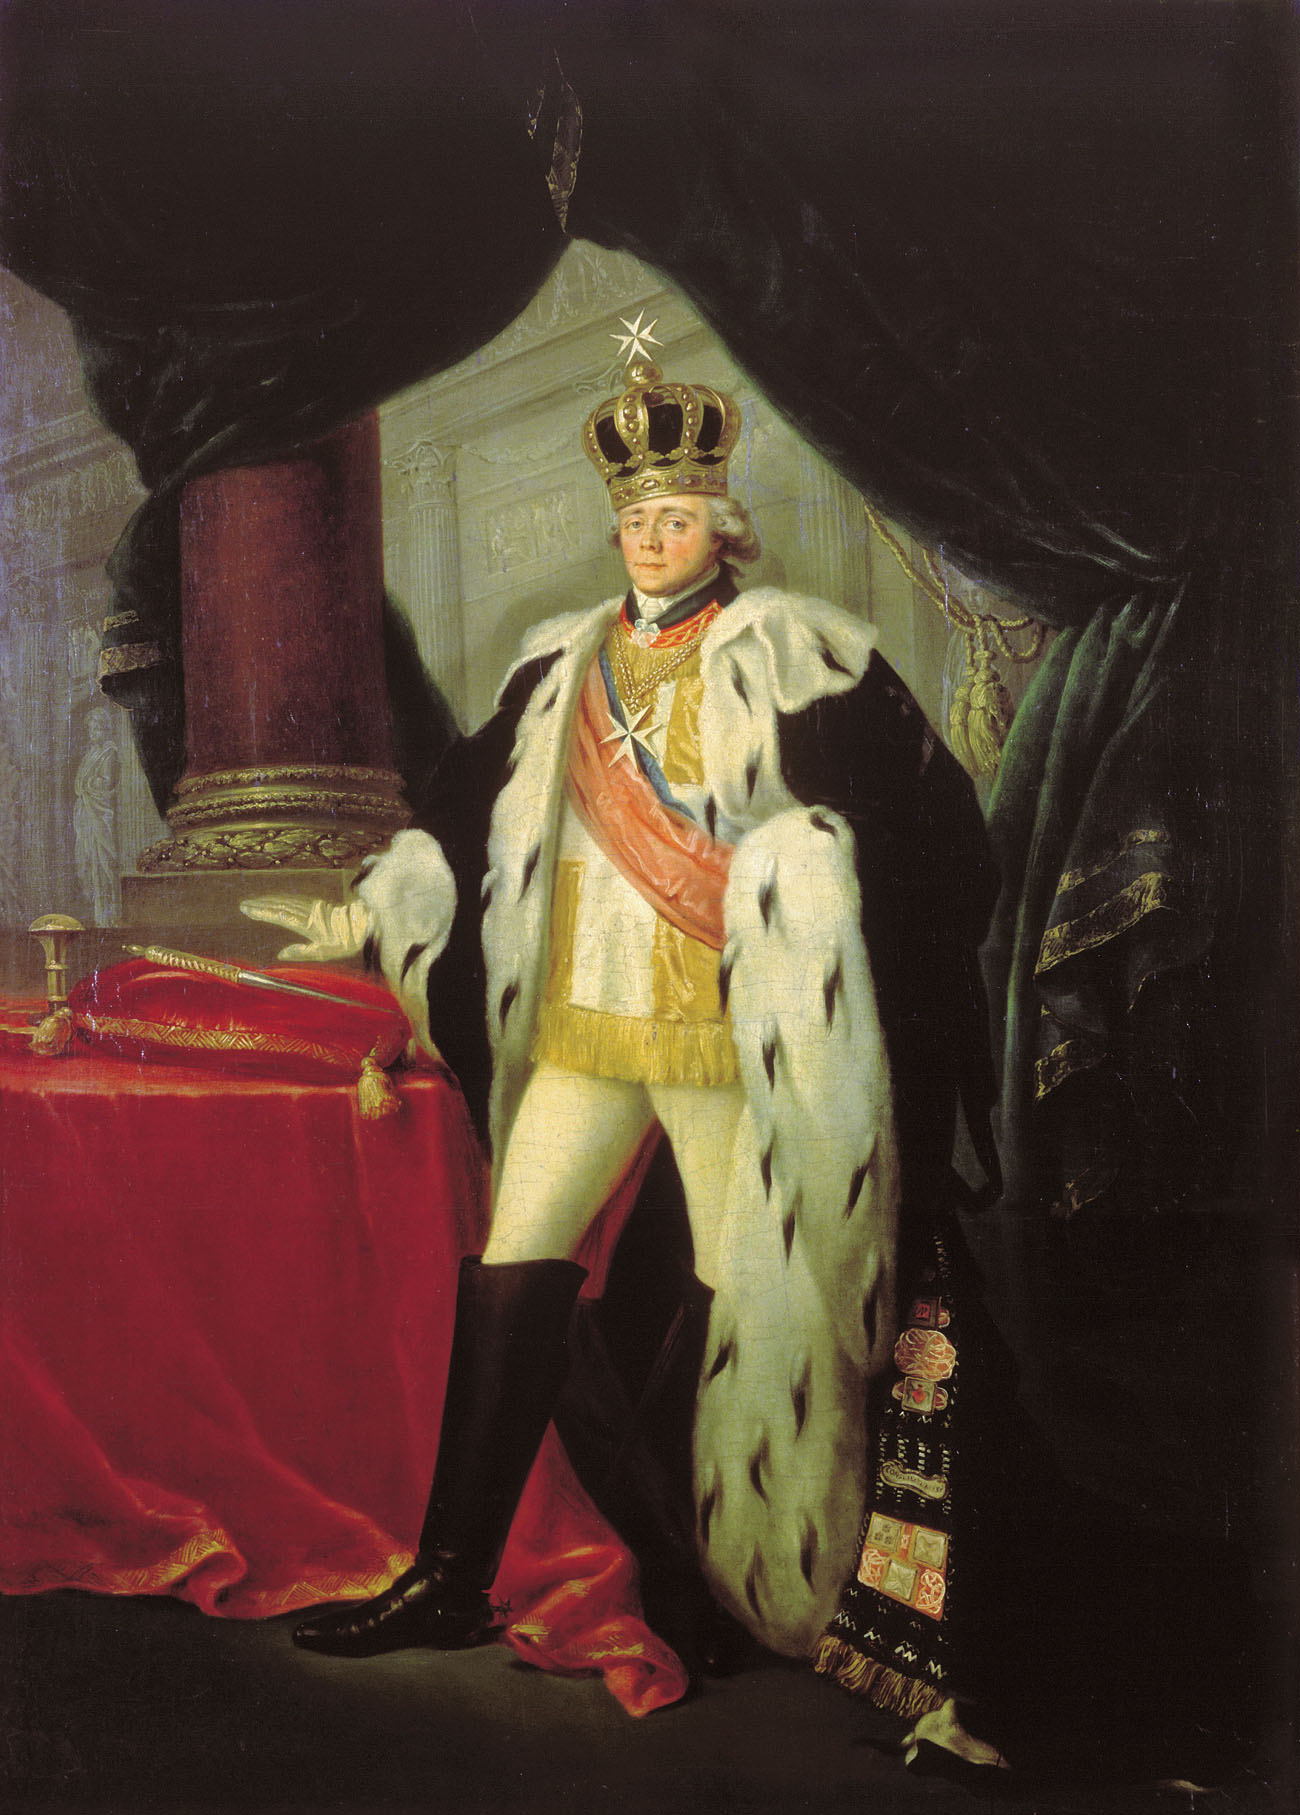 Тончи. Портрет императора Павла I. Между декабрем 1798 и февралем 1